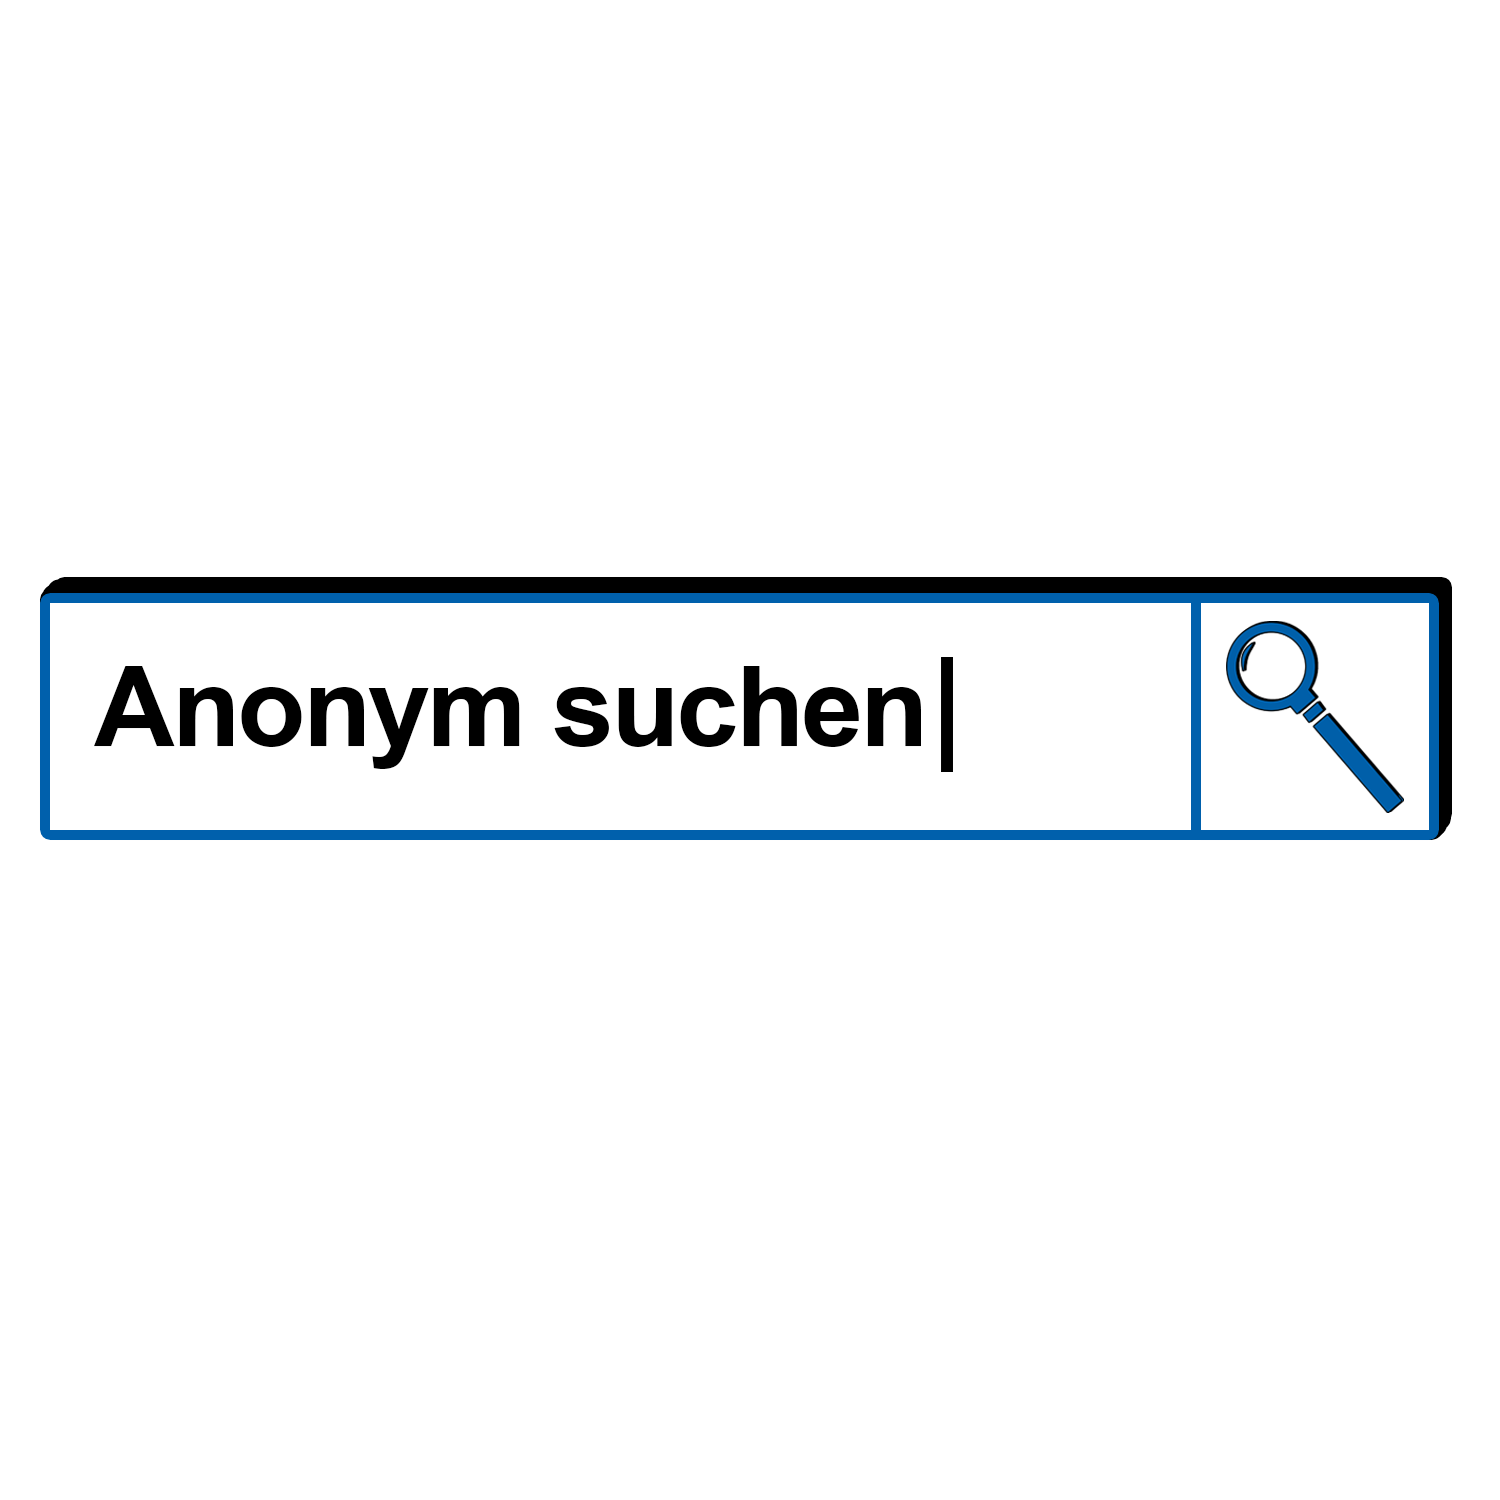 Suchleiste mit Suchbegriff "Anonym suchen"